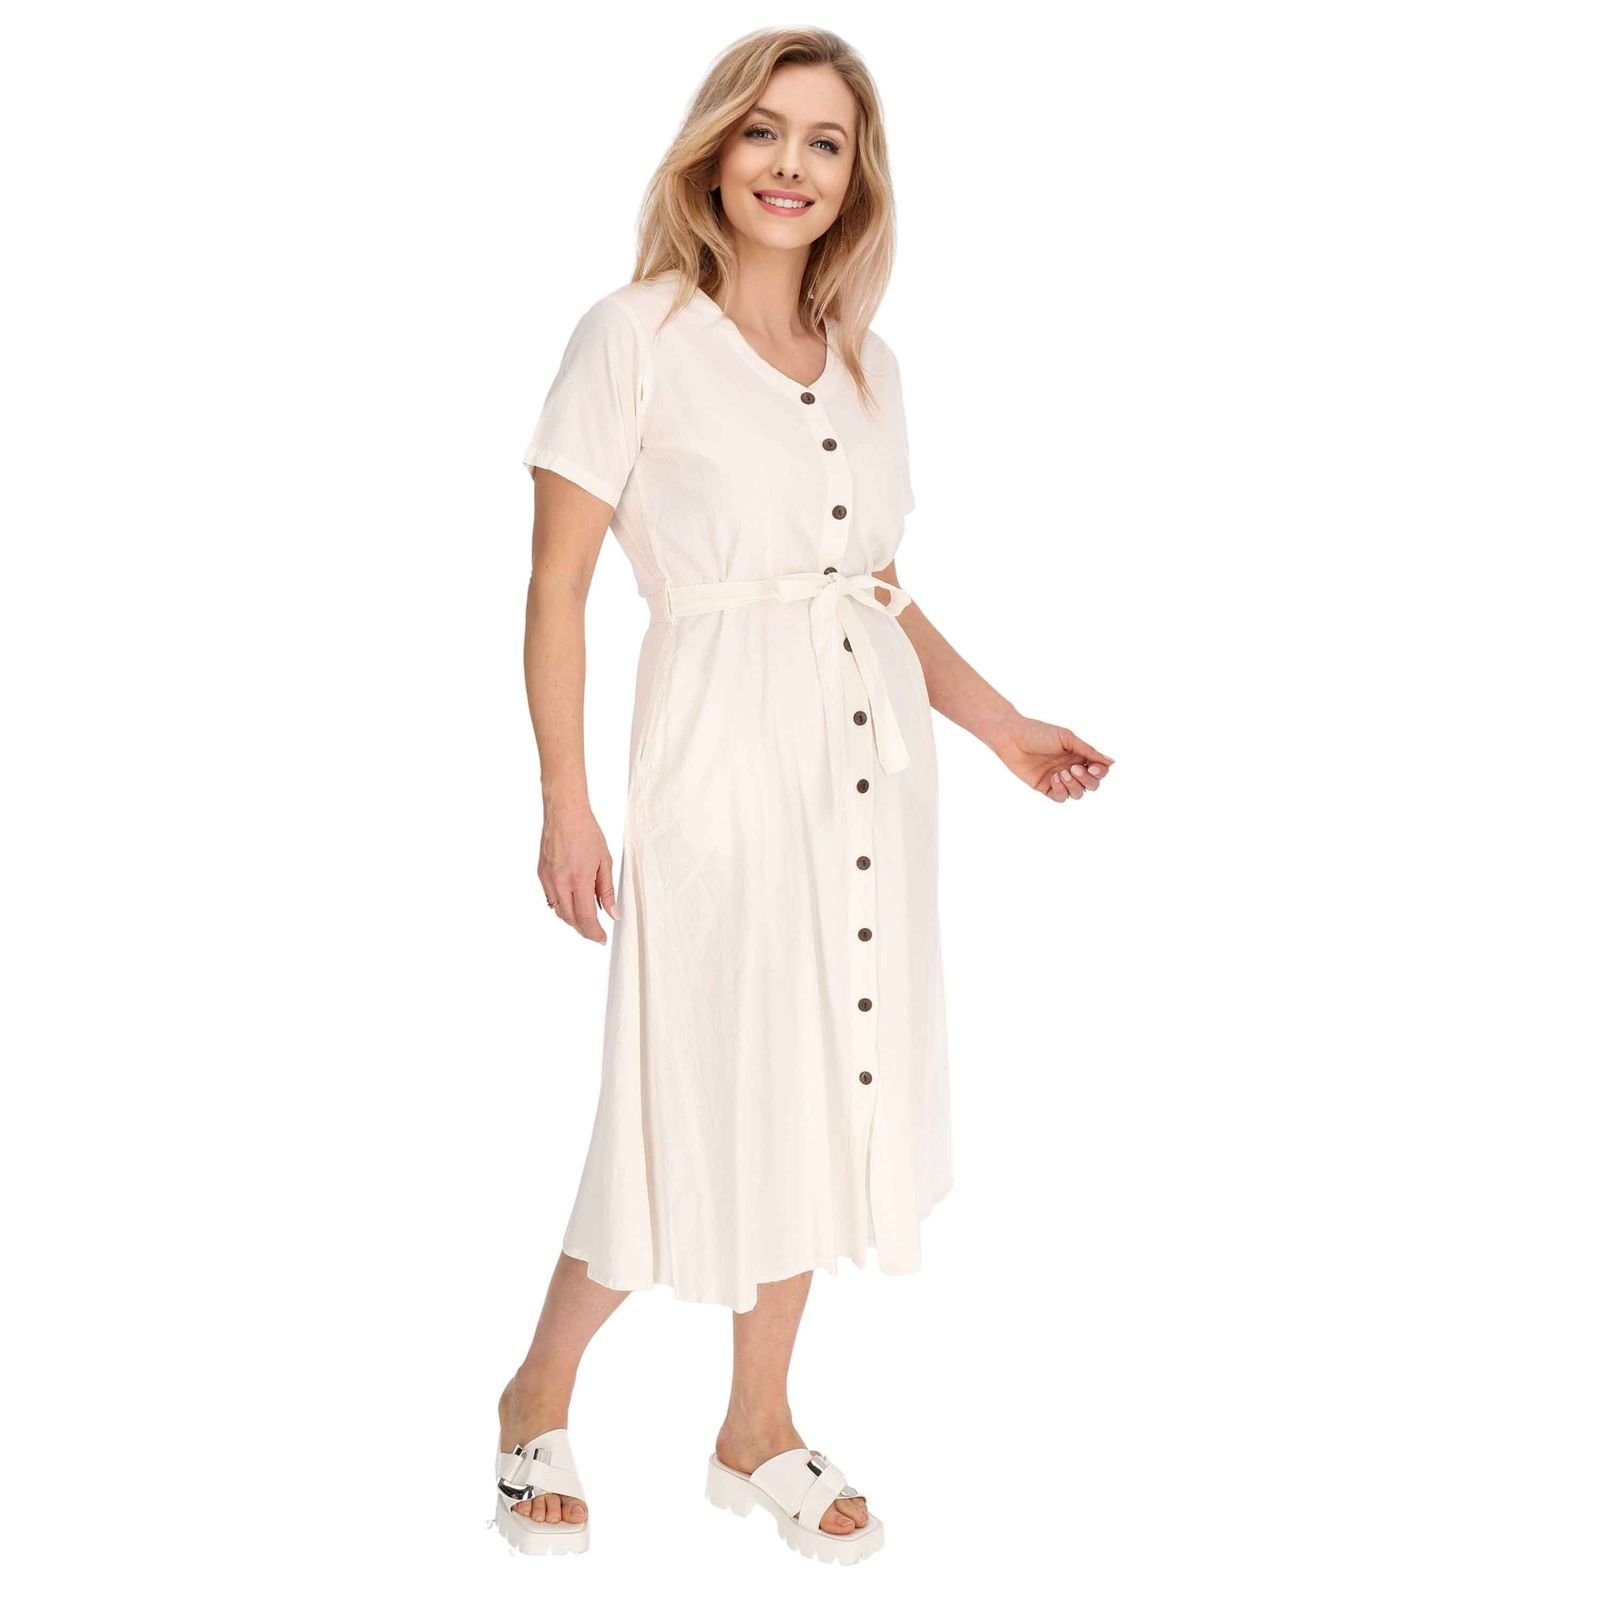 KUNST UND Boho Geköpft Kleid Weiß Latzhose Kleid MAGIE Hippie Sommerkleid Baumwoll Ibiza